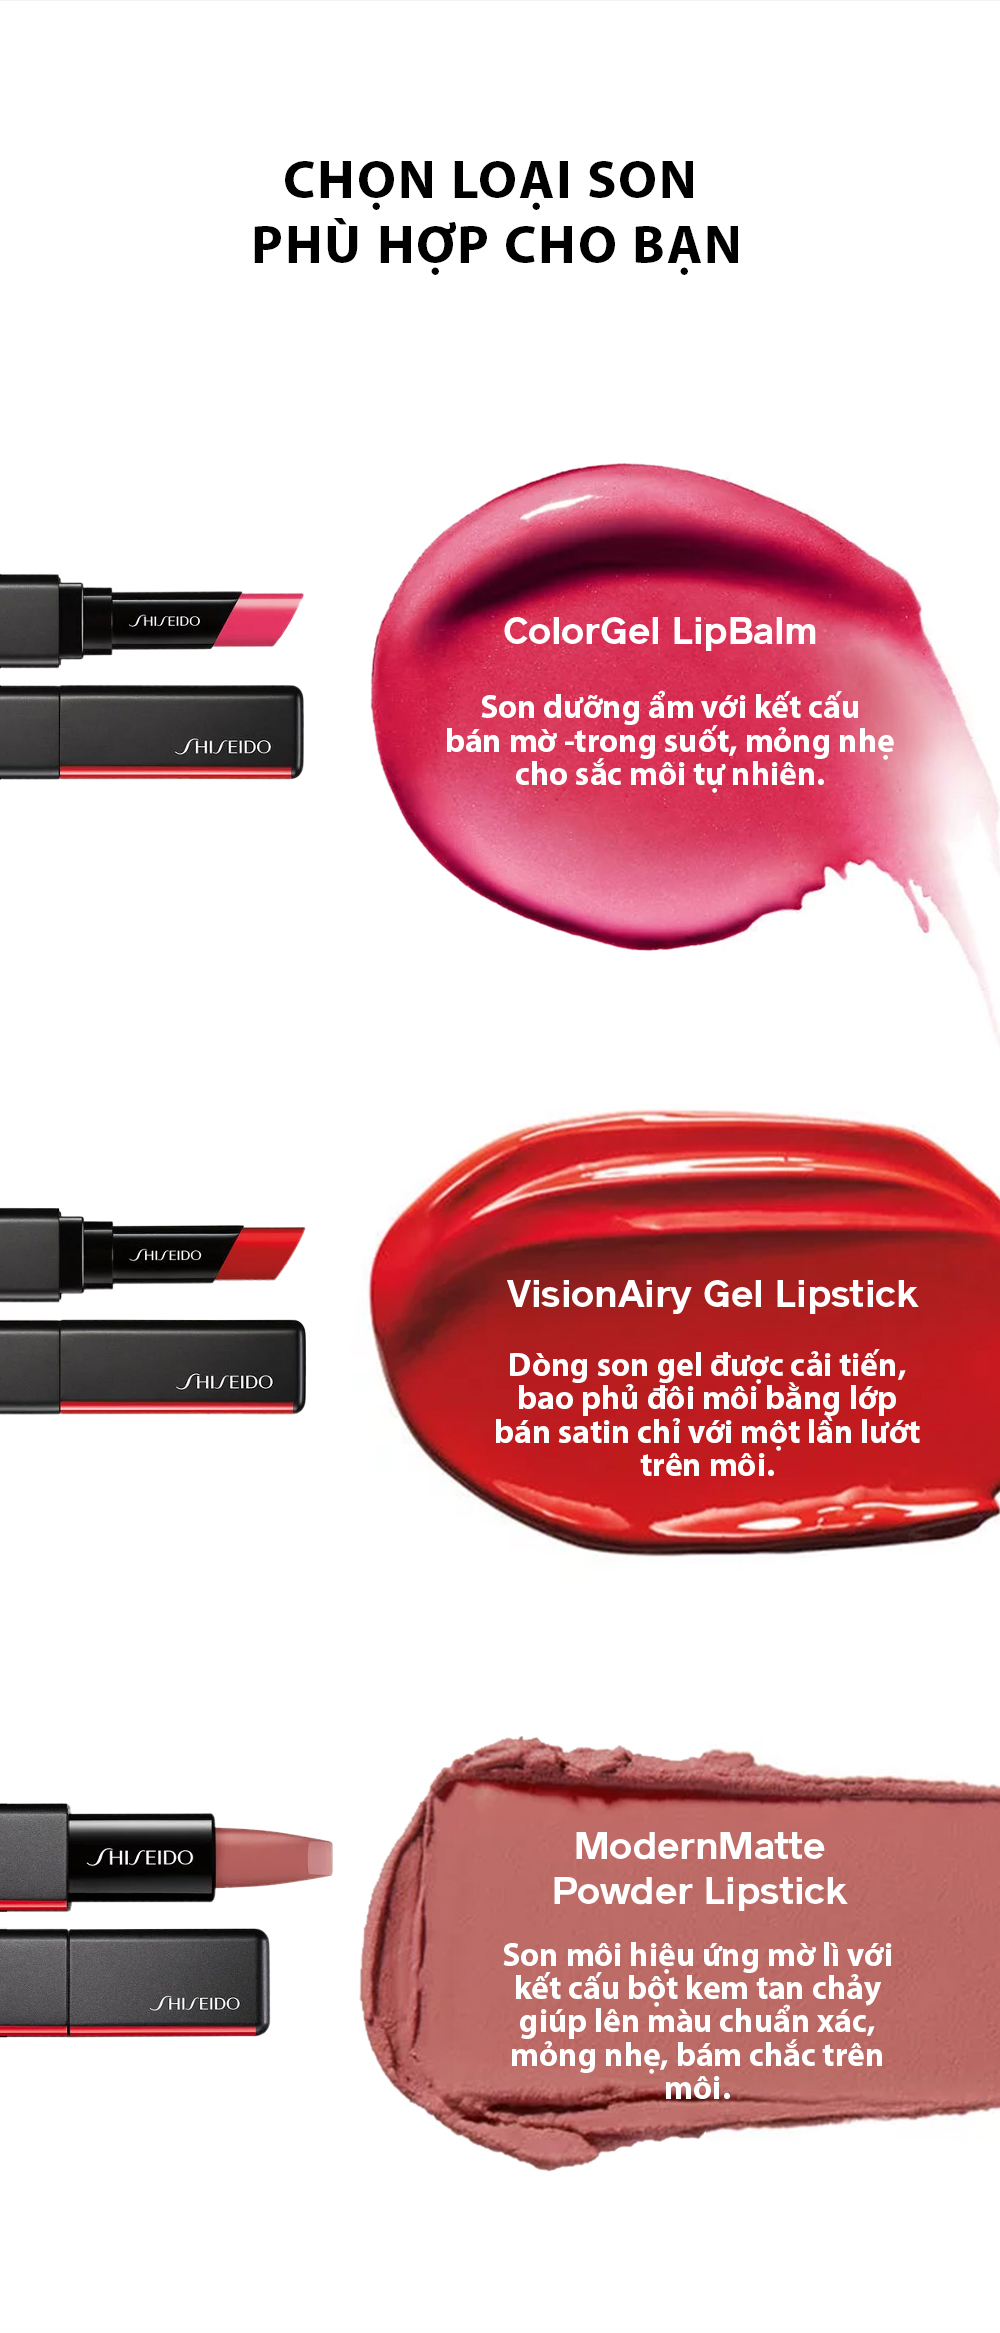 Son Bán Lì Kết Cấu Gel Shiseido Visionarygel Lipstick (1.6g)